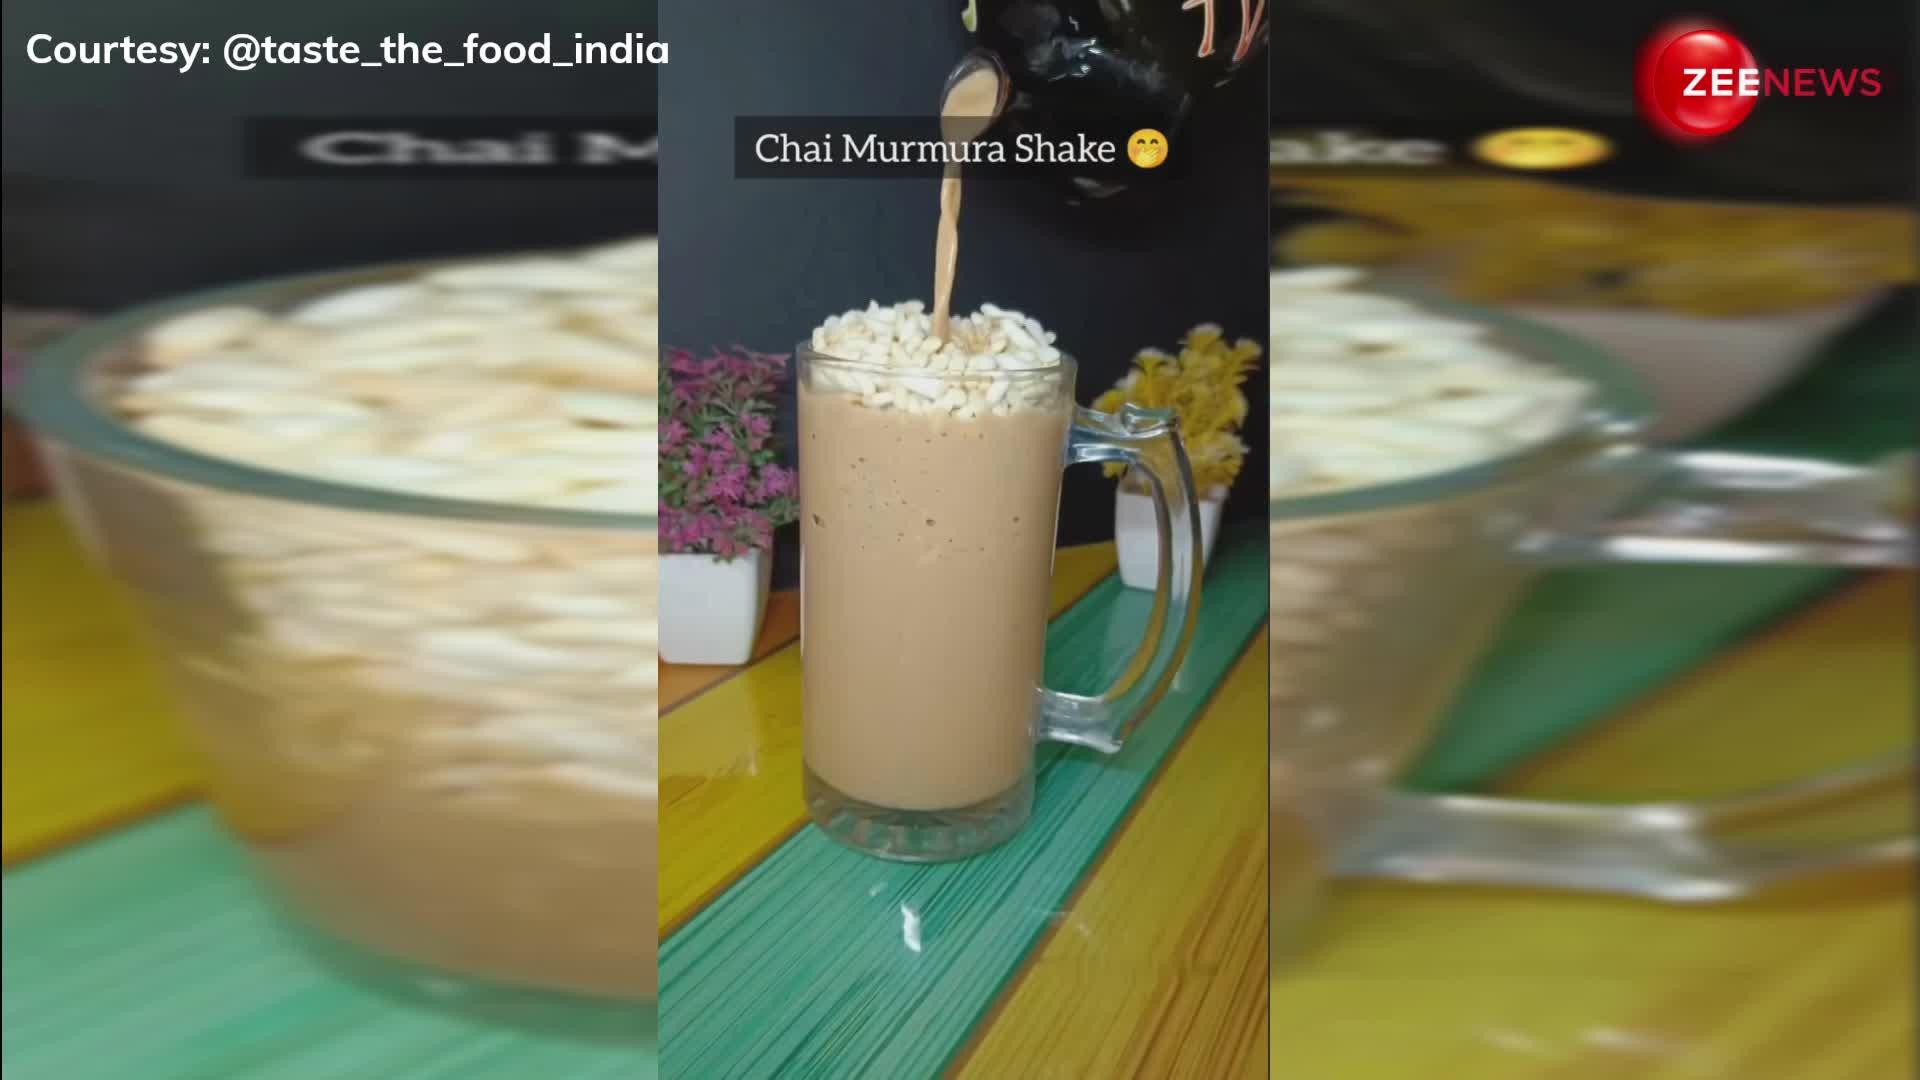 Chai Lovers को झटका! वायरल हुआ चाय-मुरमुरा शेक, Video देख लोग बोले- बचपन की याद आ गई